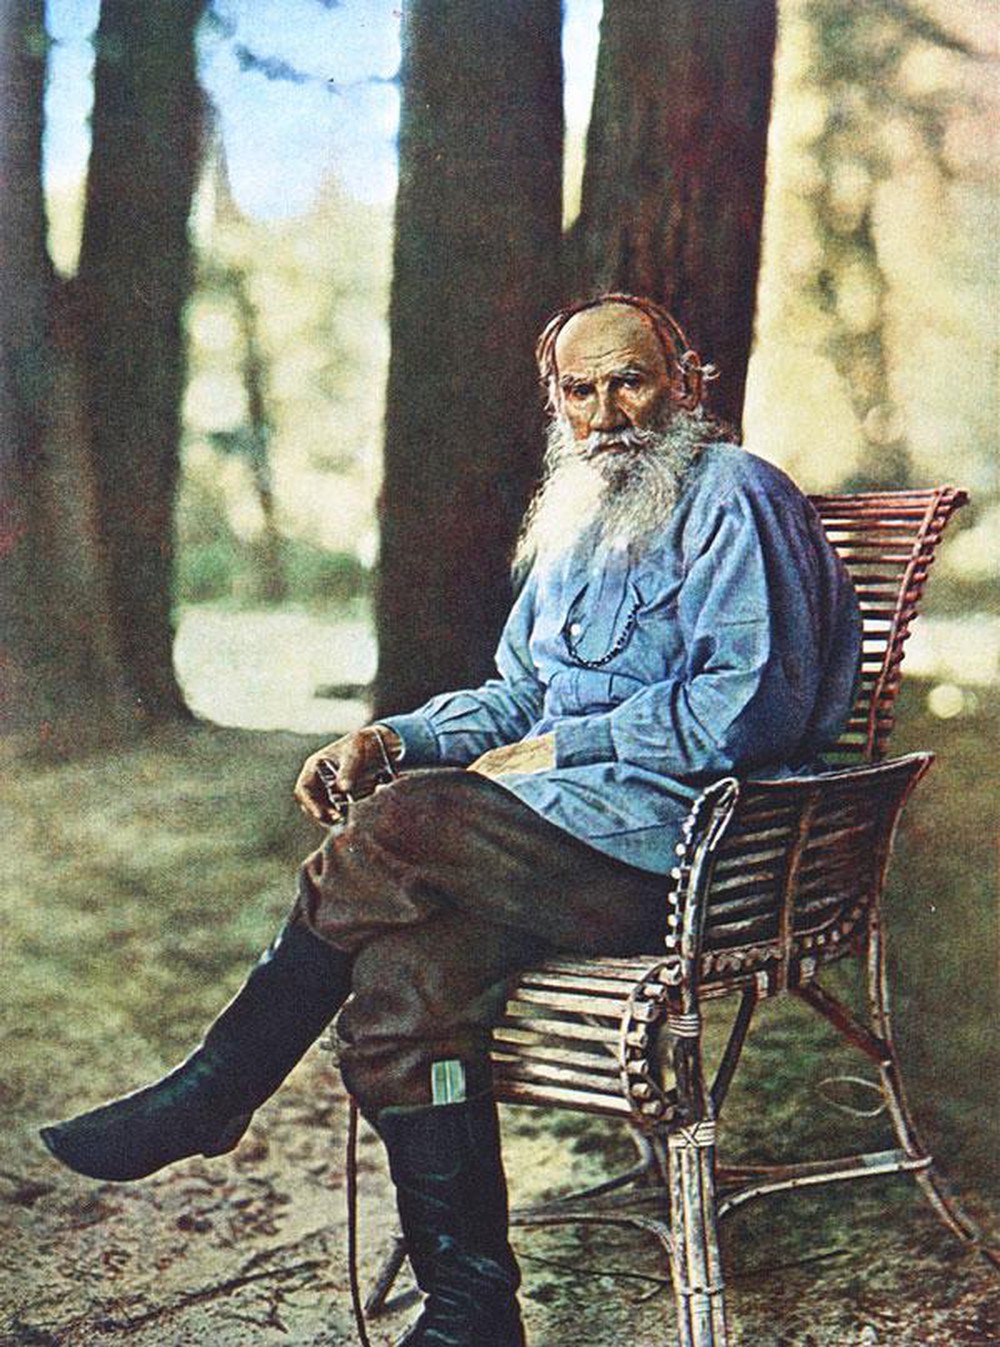 cuoc song thanh than cua lev tolstoy - Lev Tolstoy: Đỉnh cao hùng vĩ của văn học Nga